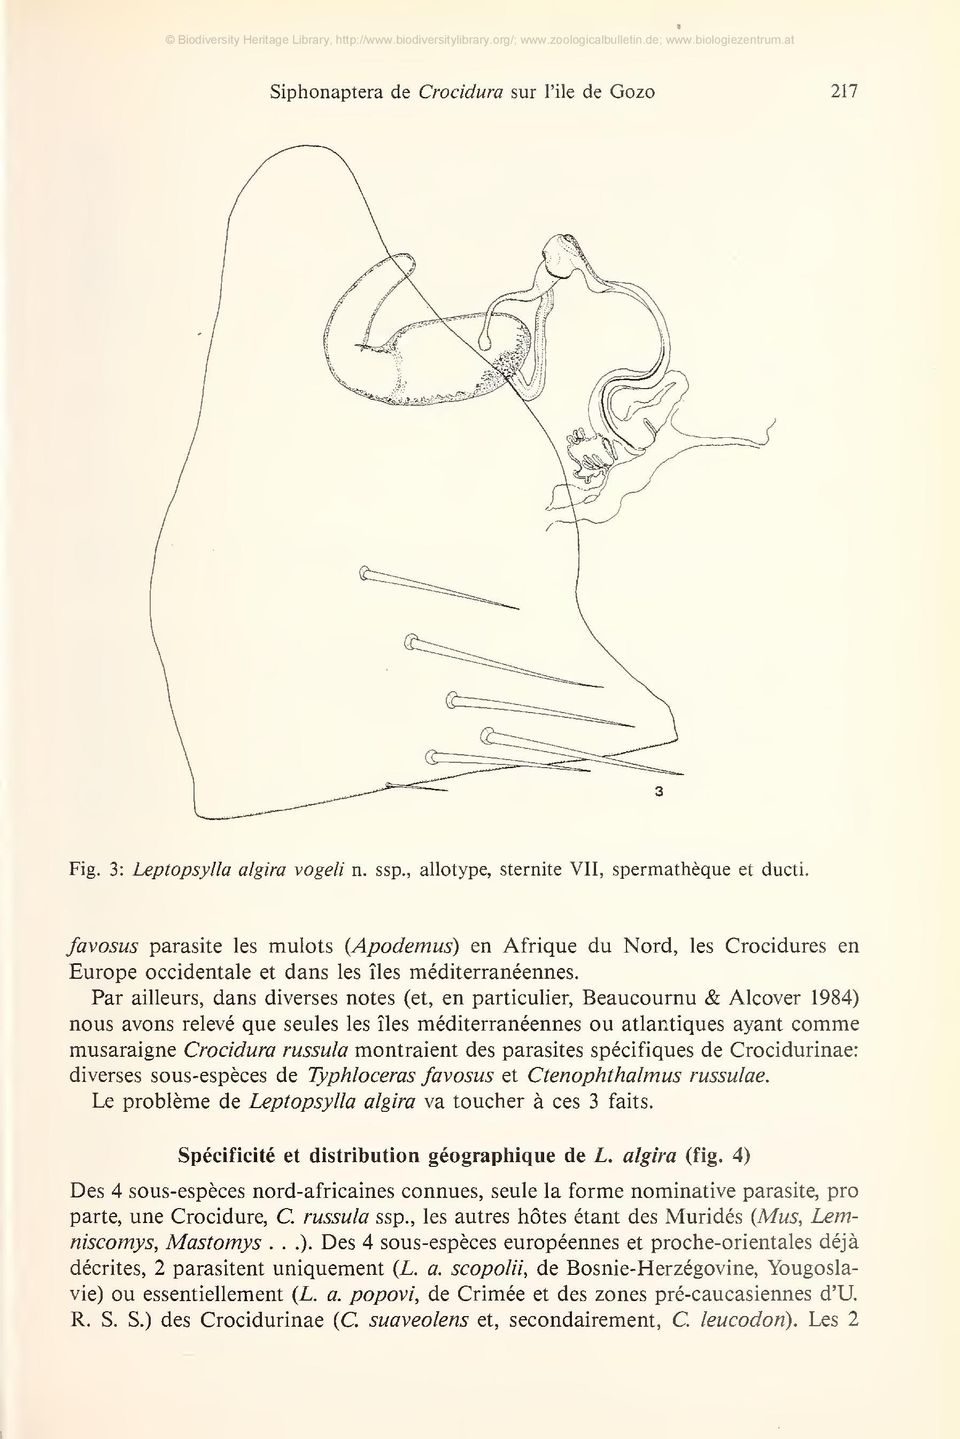 Par ailleurs, dans diverses notes (et, en particulier, Beaucournu & Alcover 1984) nous avons relevé que seules les íles méditerranéennes ou atlantiques ayant comme musaraigne Crocidura russula